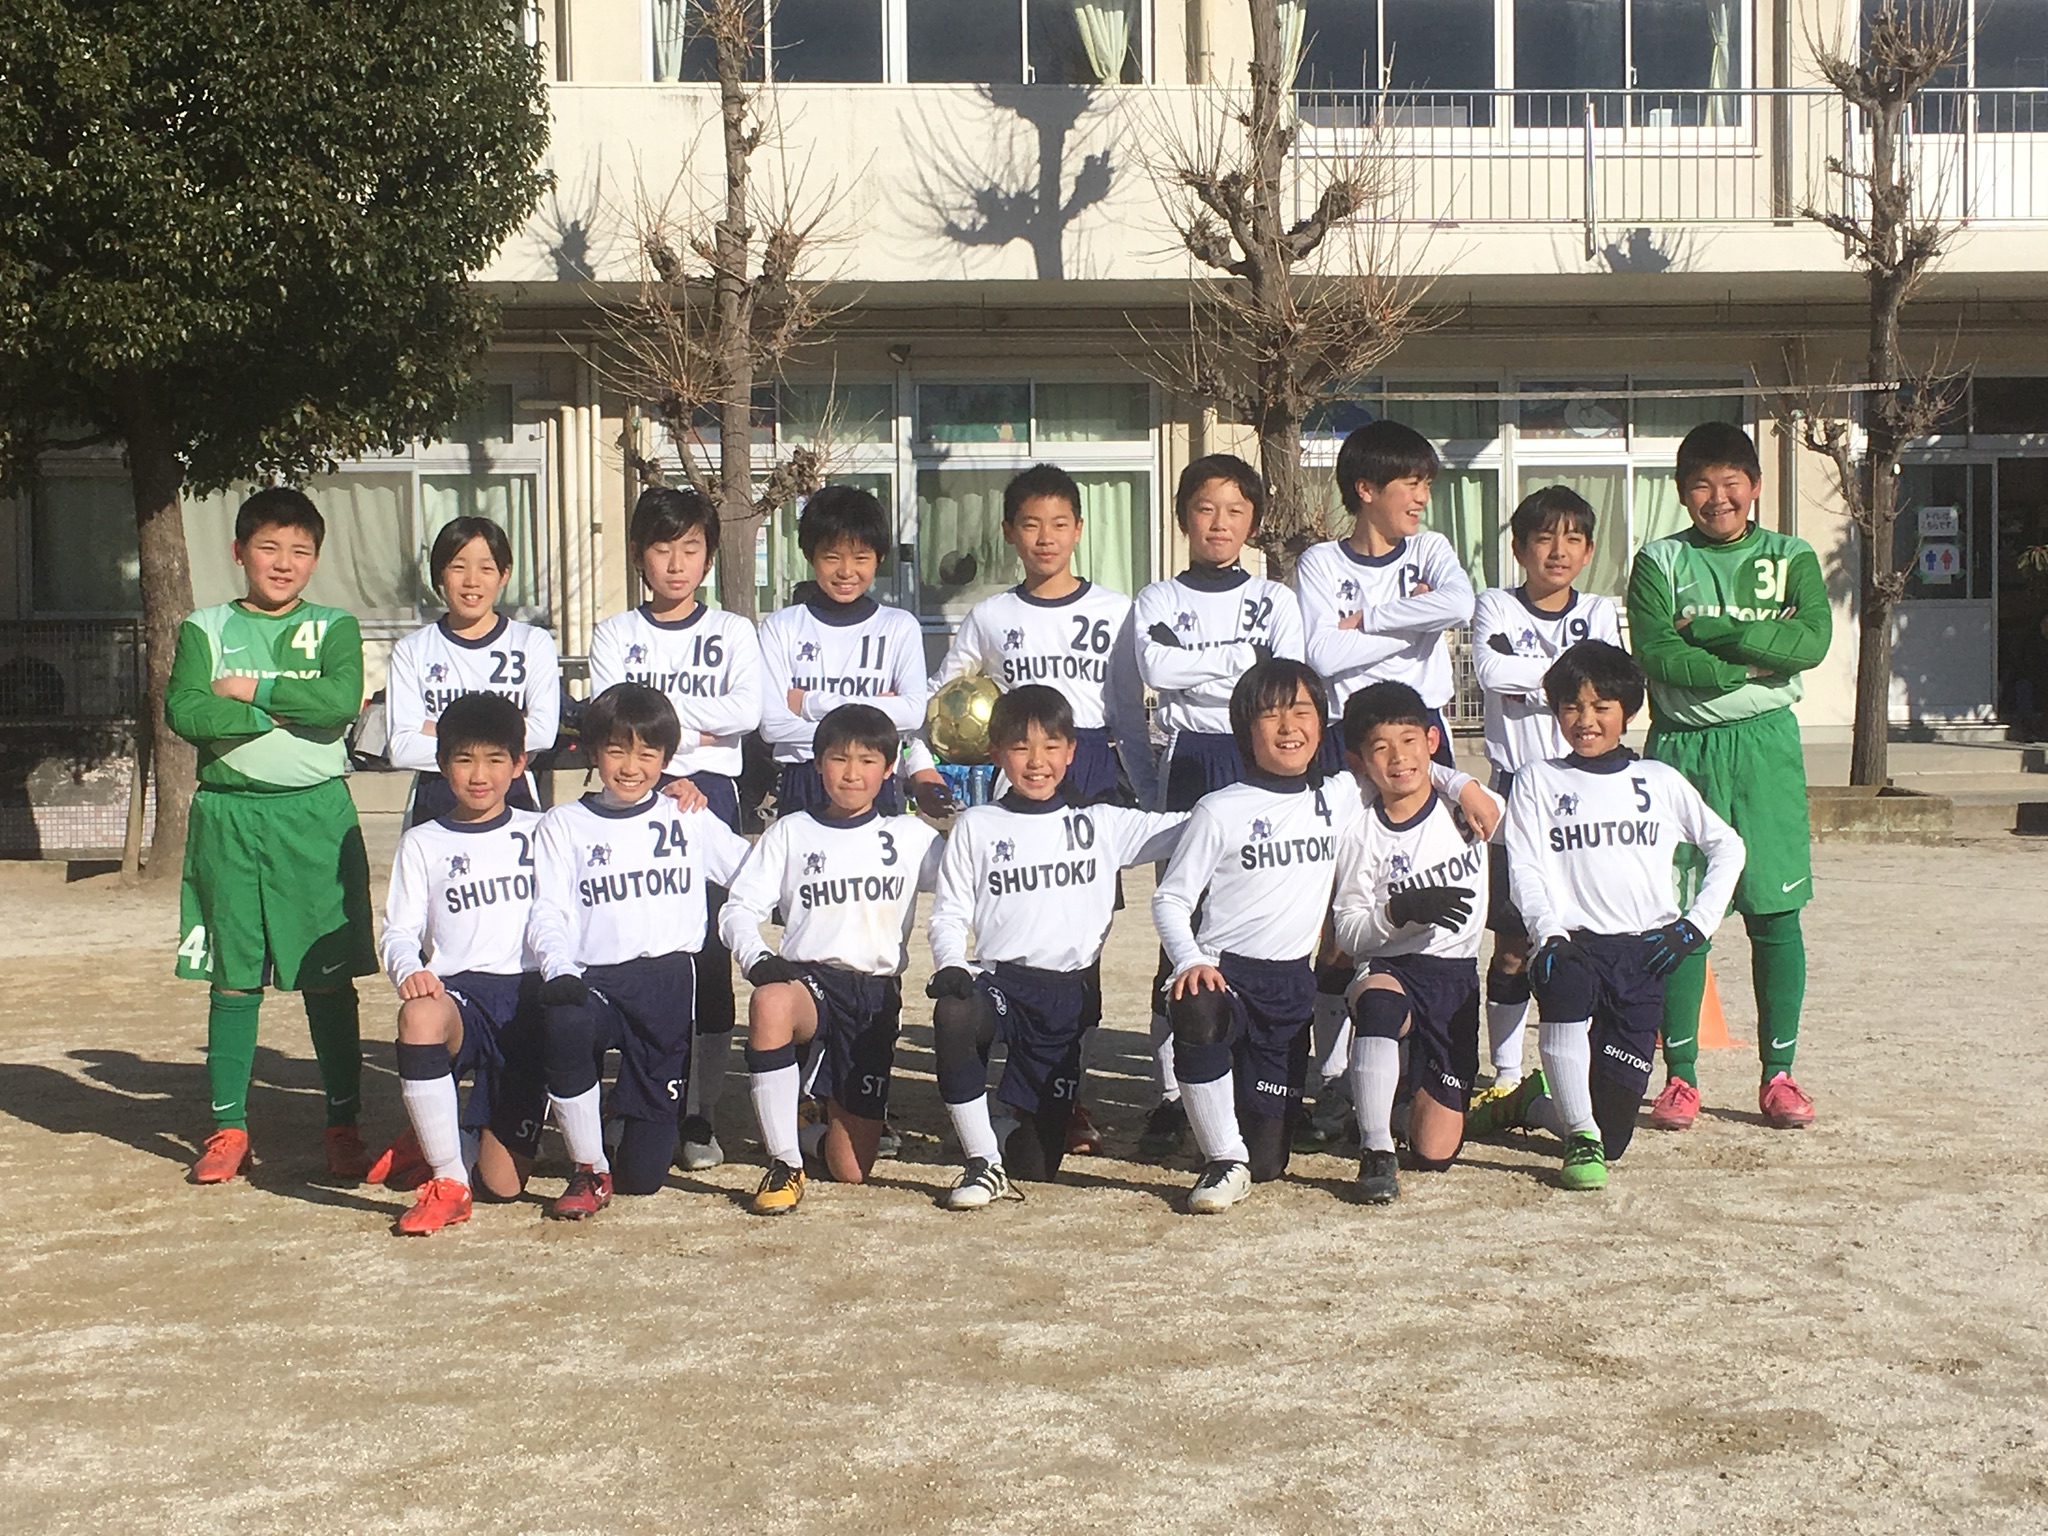 修徳fc ジュニア選手コース 幼児 小学生のサッカースクール 17 1月